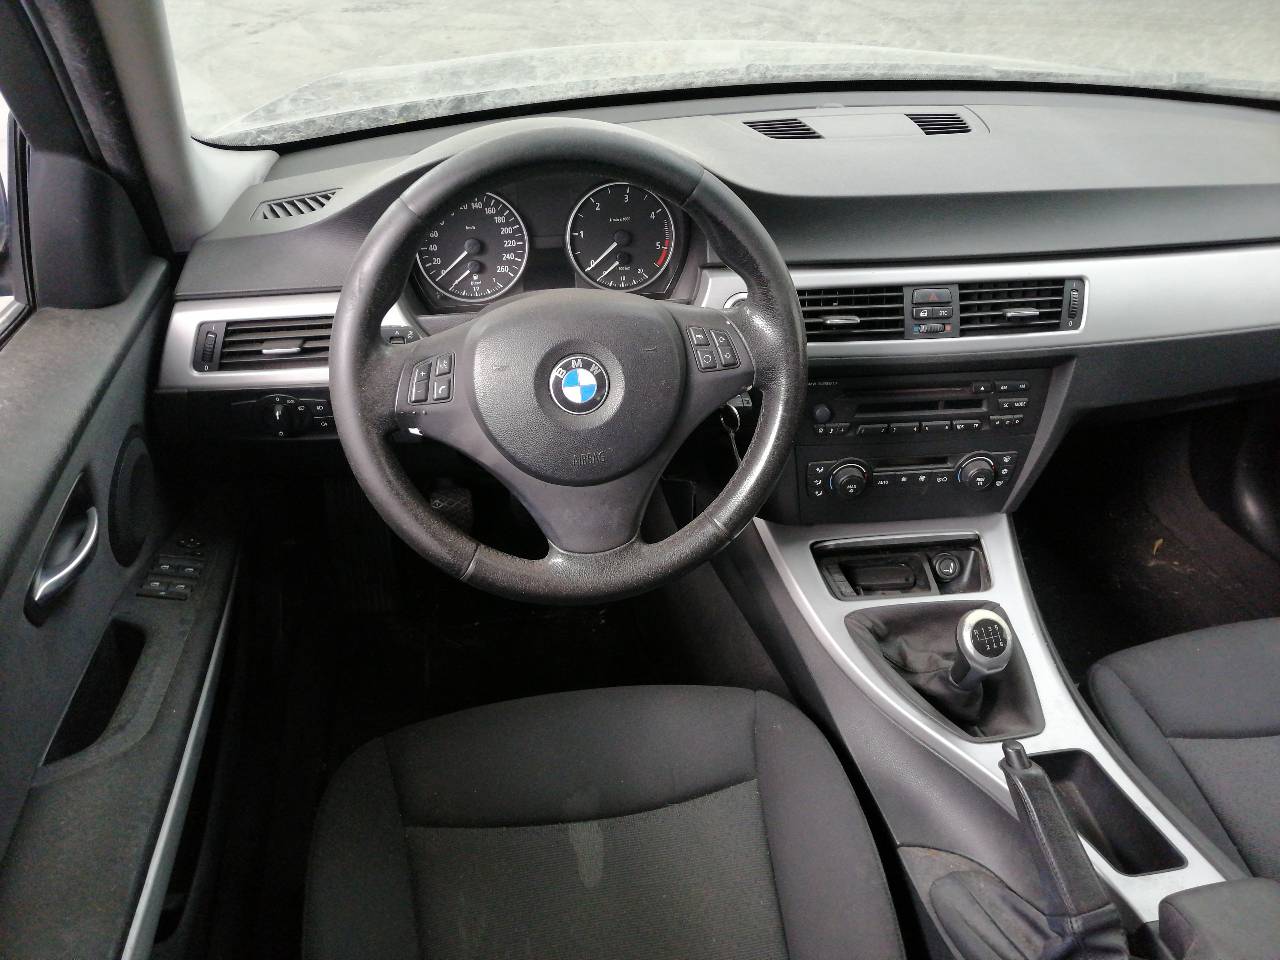 BMW 3 Series E90/E91/E92/E93 (2004-2013) Rear Right Taillight Lamp 6937458, DEALETA, 4PUERTAS 23754476